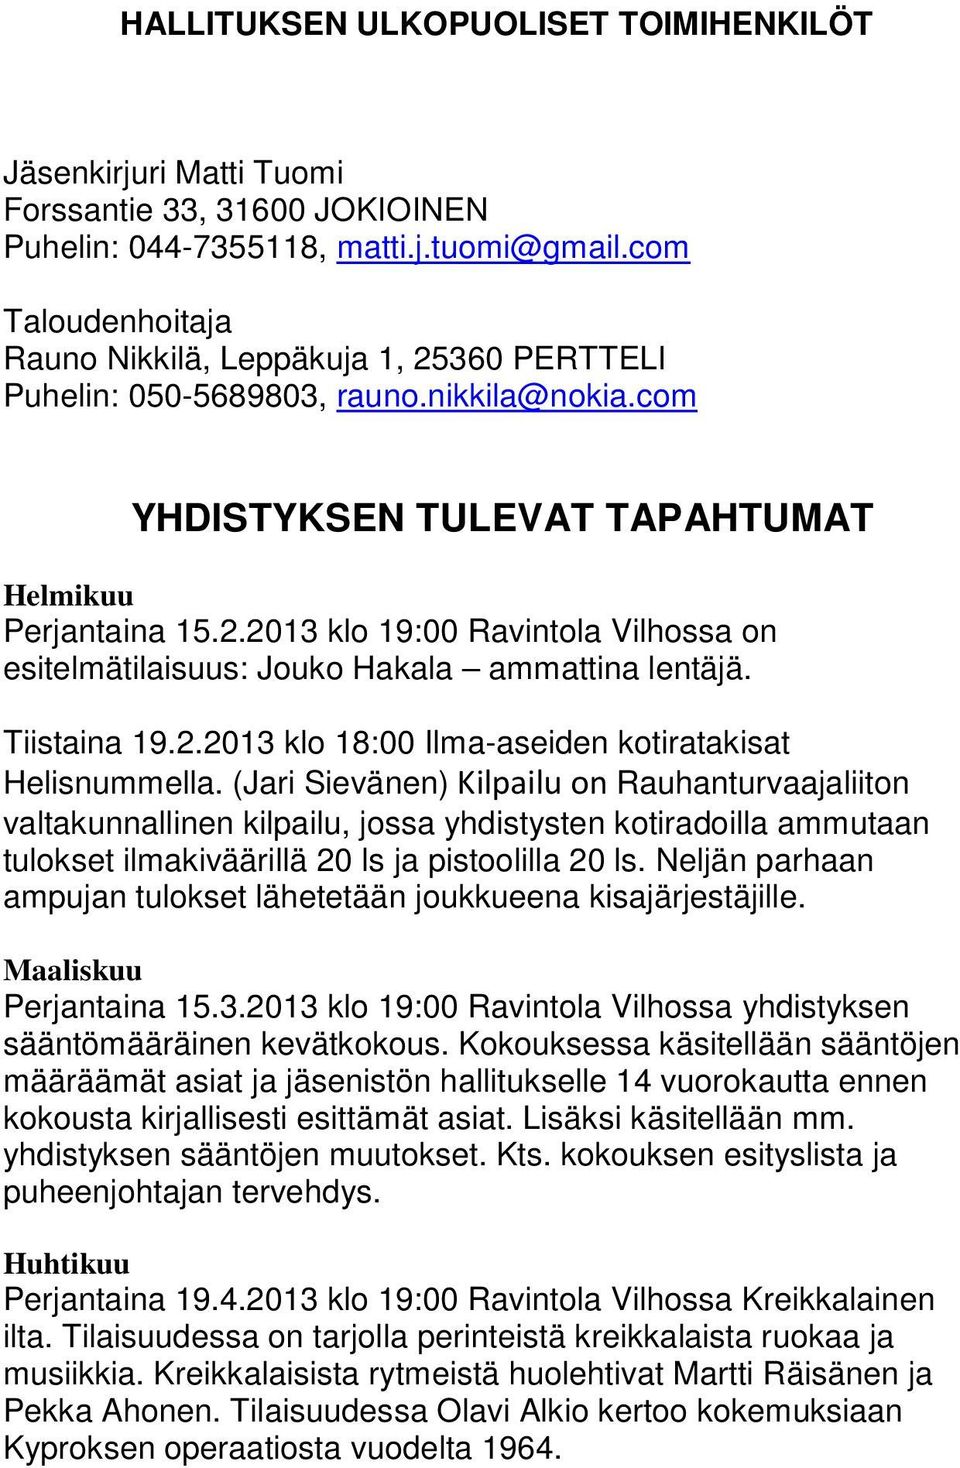 Tiistaina 19.2.2013 klo 18:00 Ilma-aseiden kotiratakisat Helisnummella.